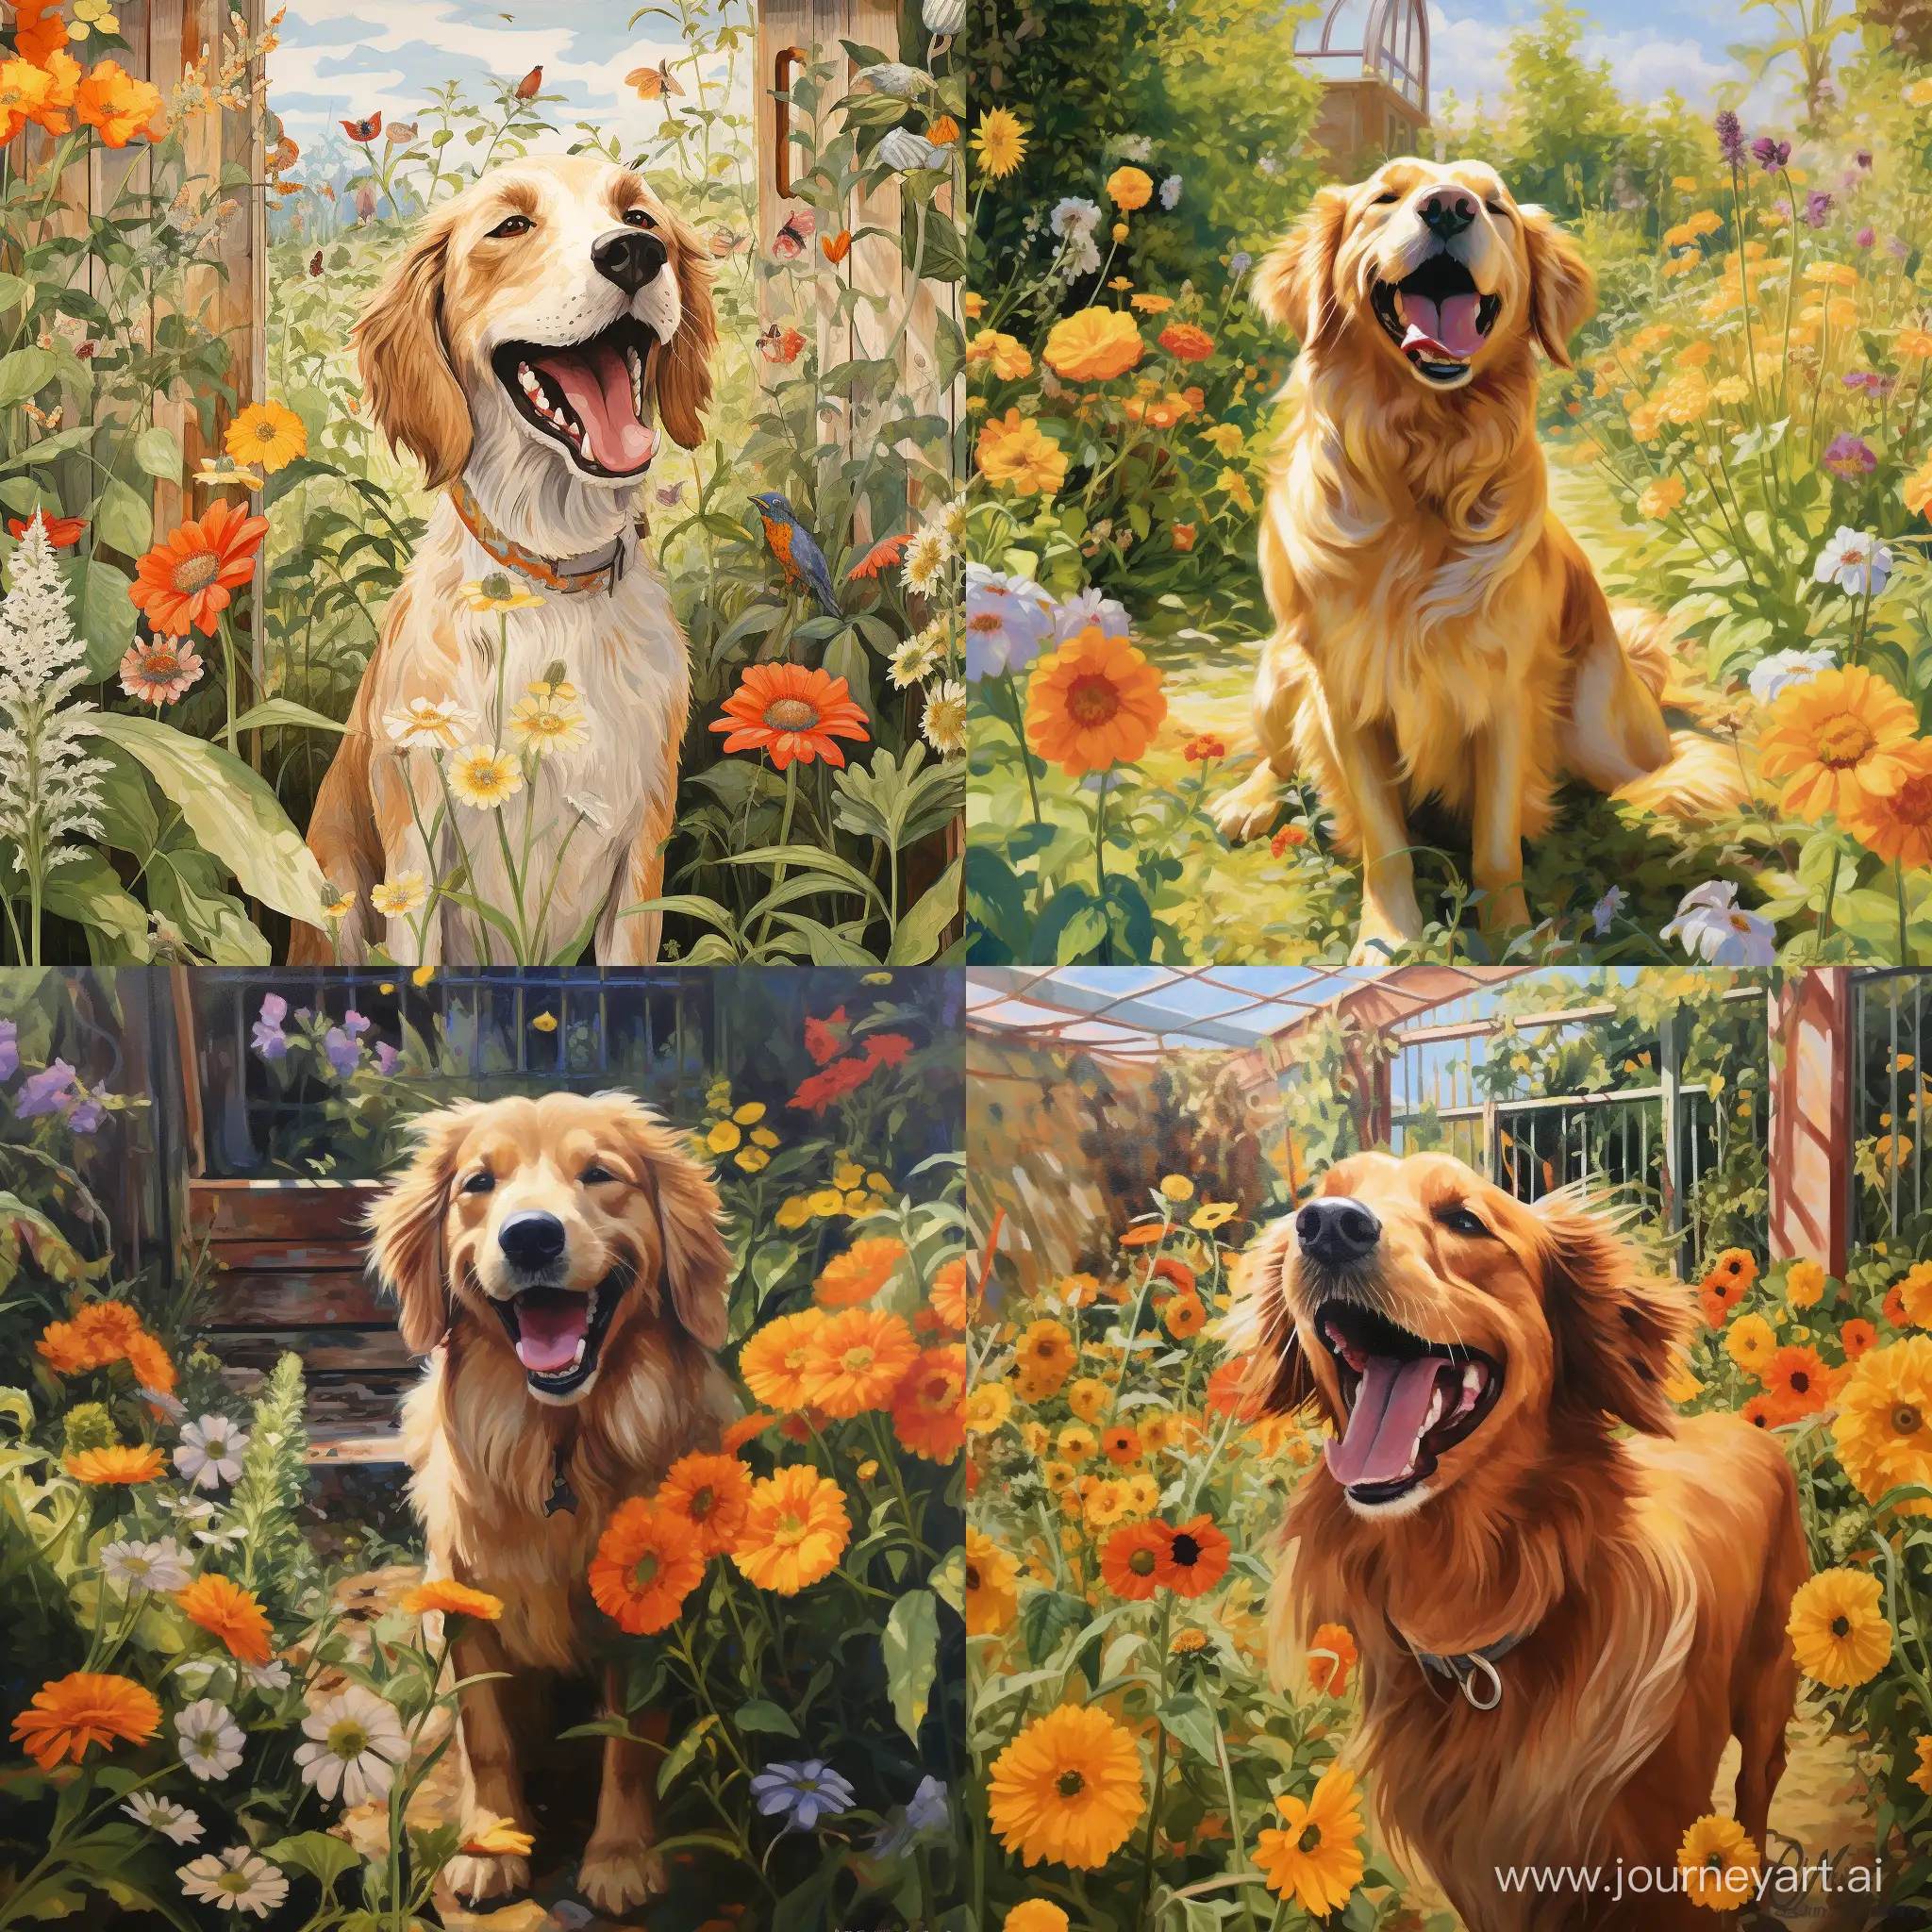 Joyful-Canine-Delight-in-a-Lush-Garden